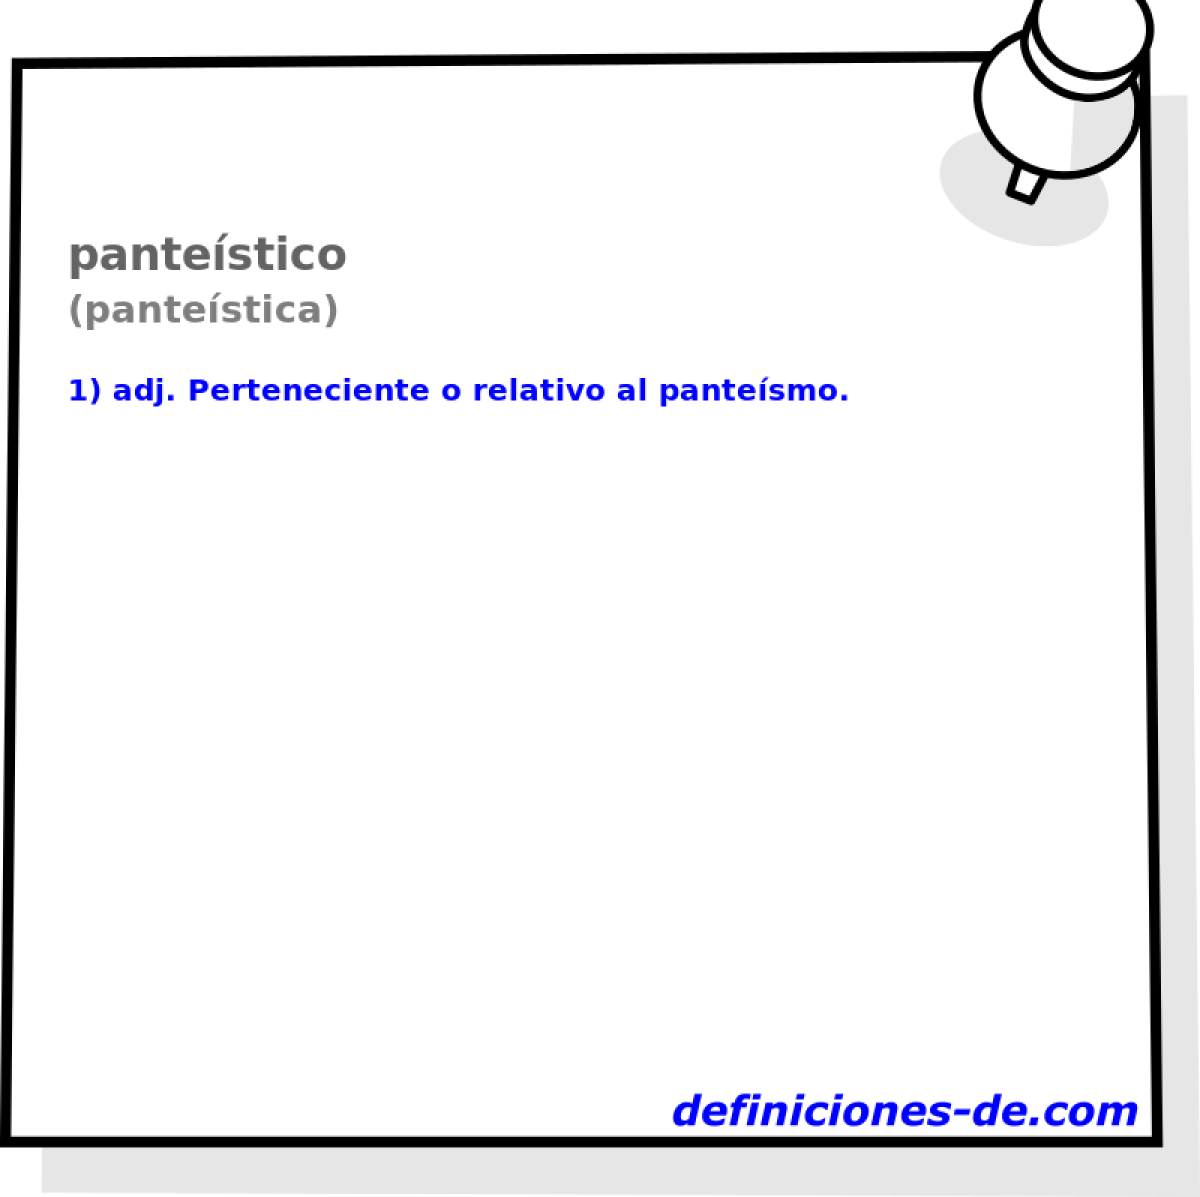 pantestico (pantestica)